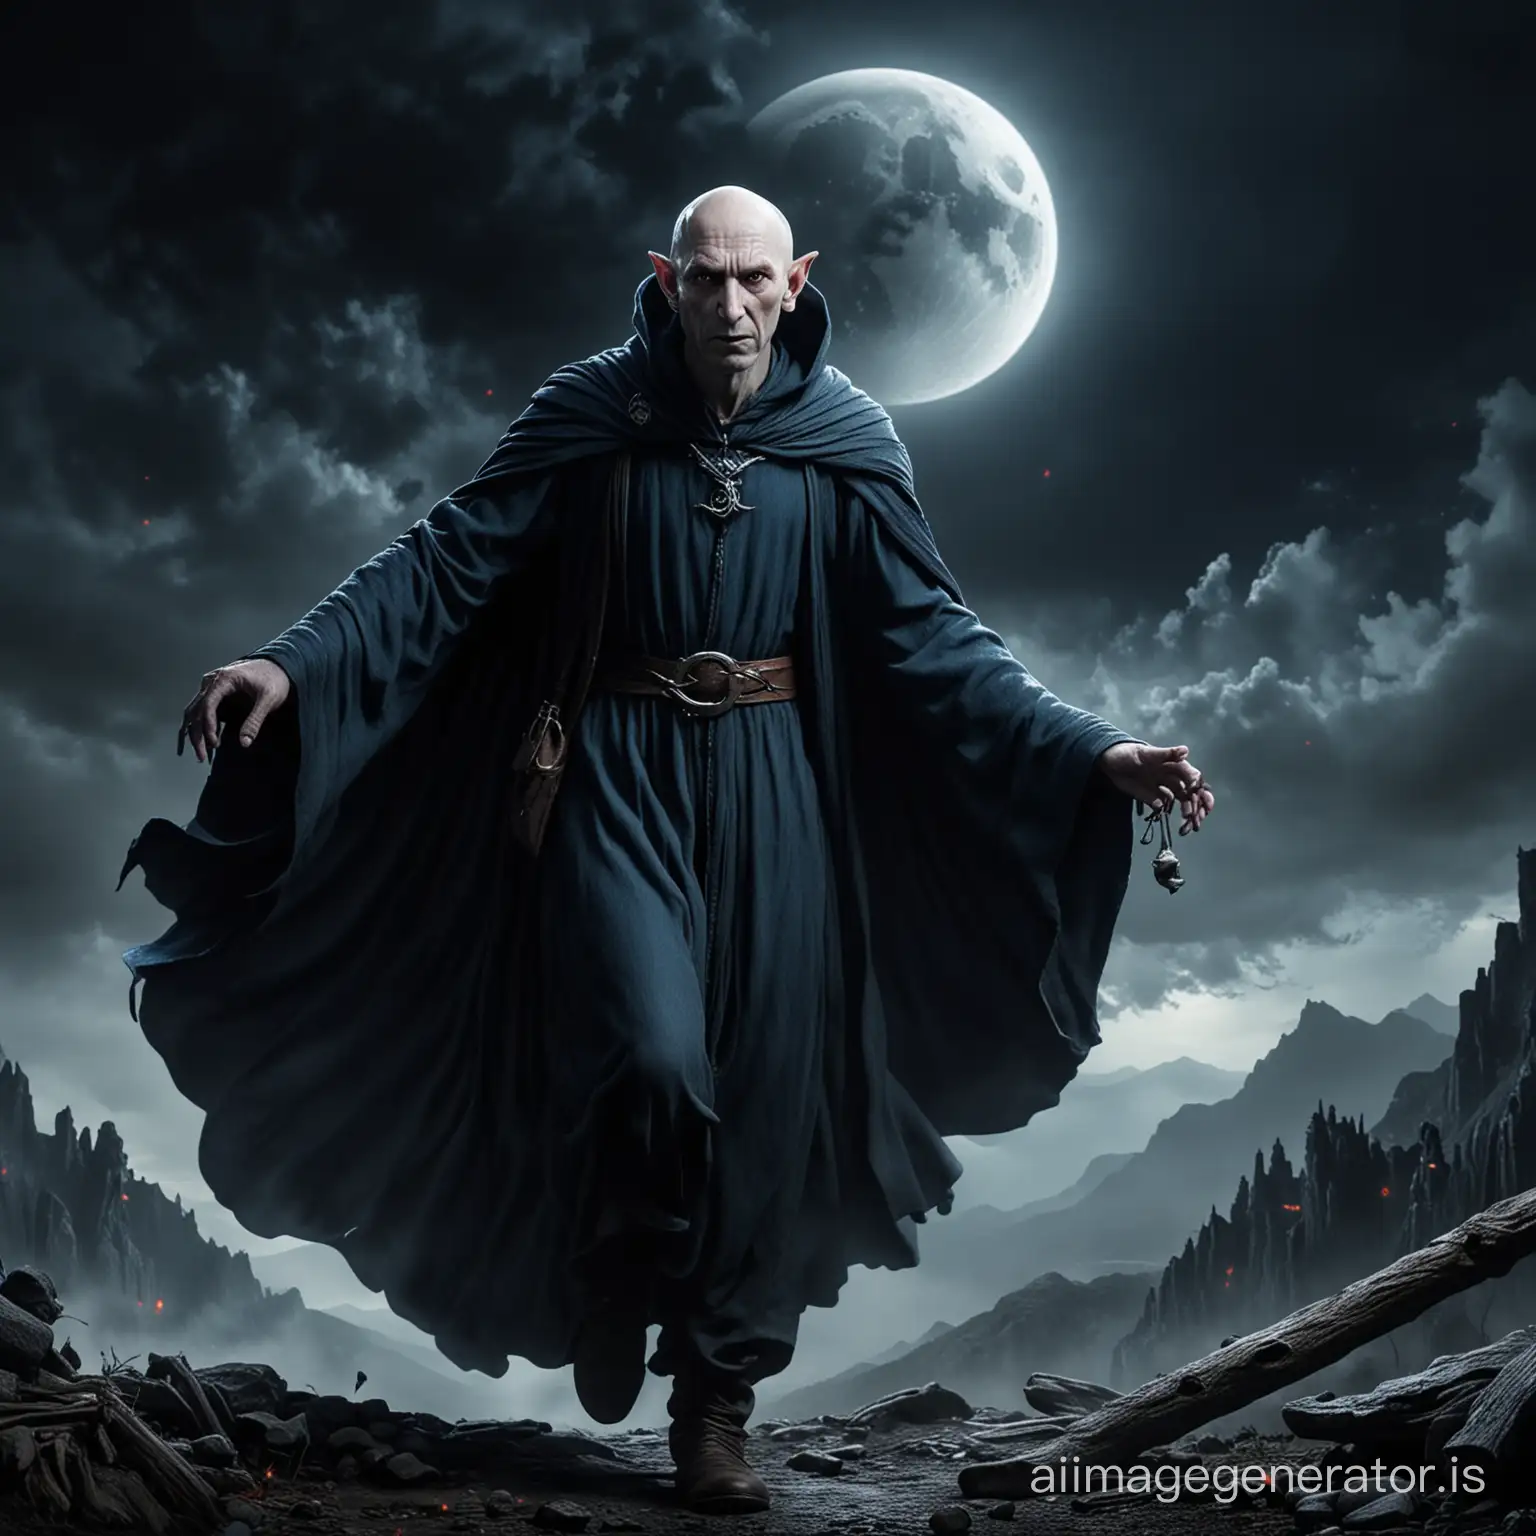 Sinister-Tall-Wizard-Soars-Under-Moonlight-in-Elvish-Robes